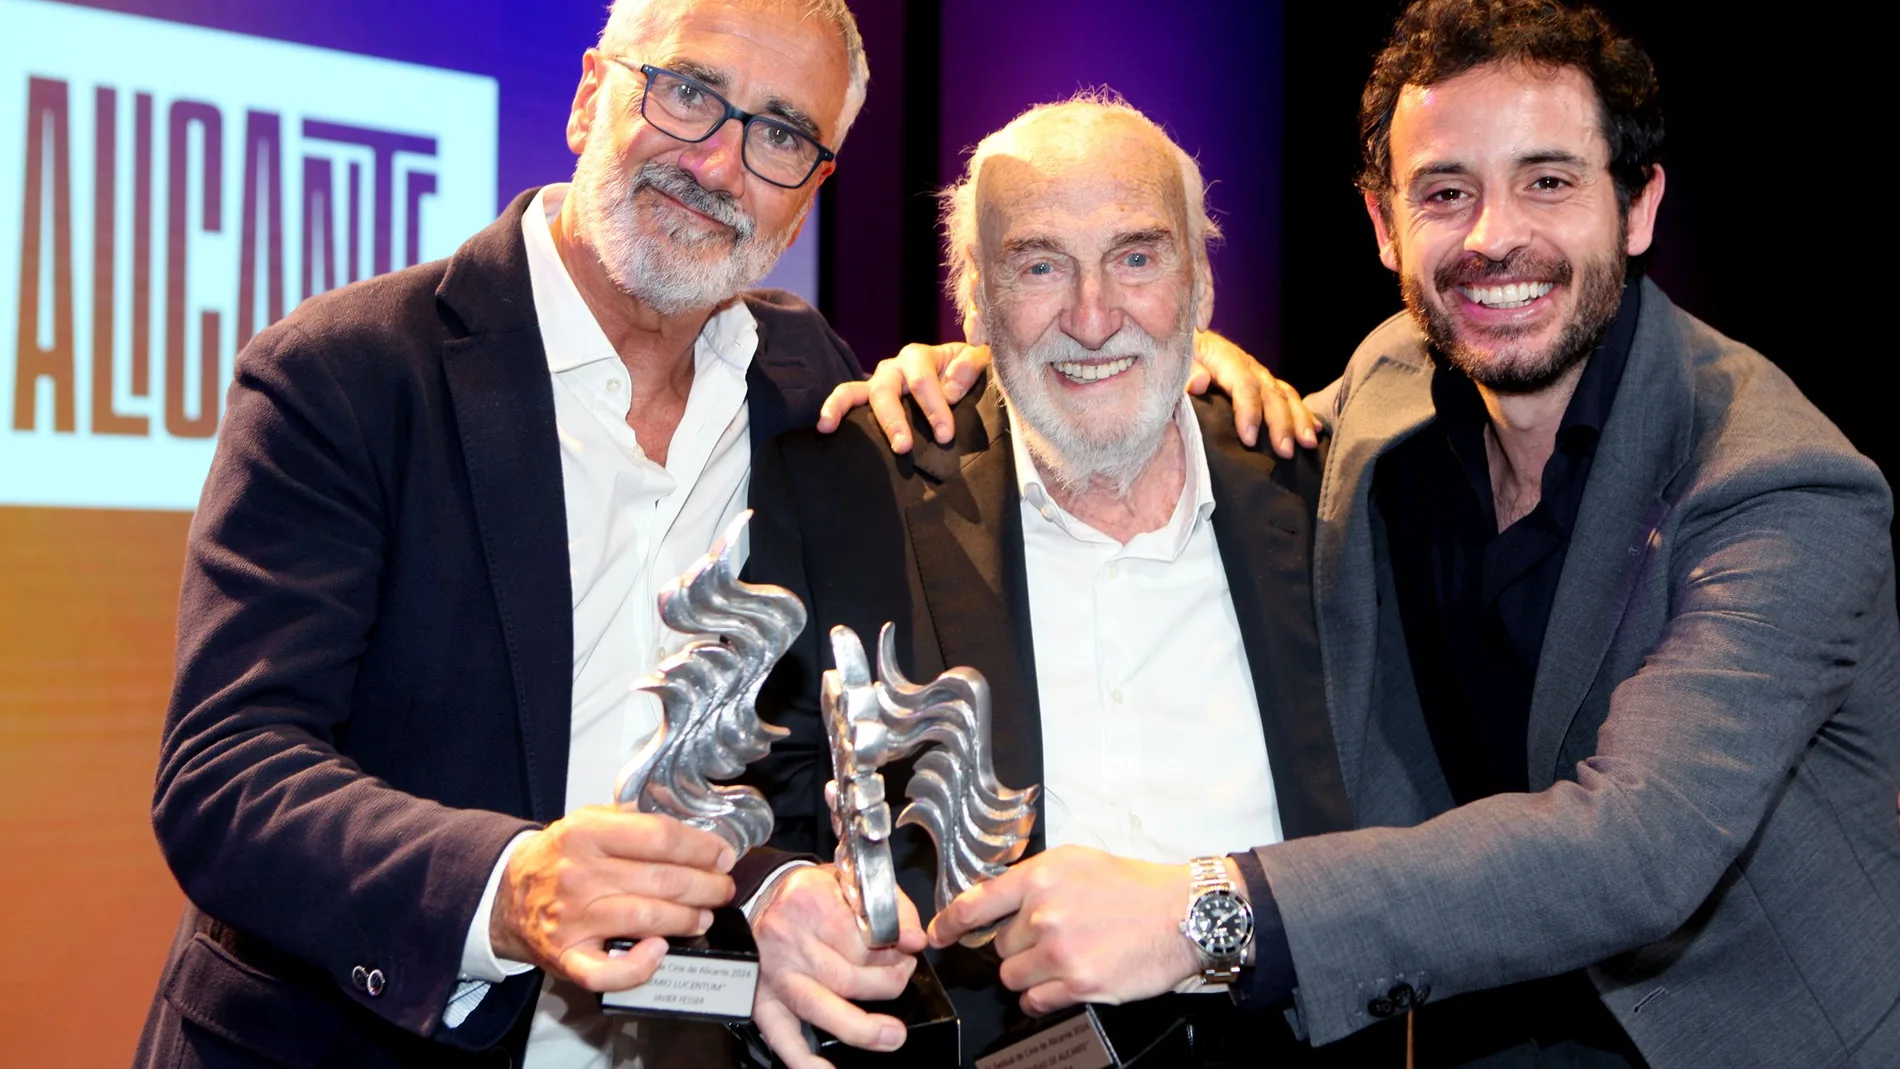 Héctor Alterio, Javier Fesser y Javier Pereira homenajeados en la inauguración del Festival Internacional de Cine de Alicante